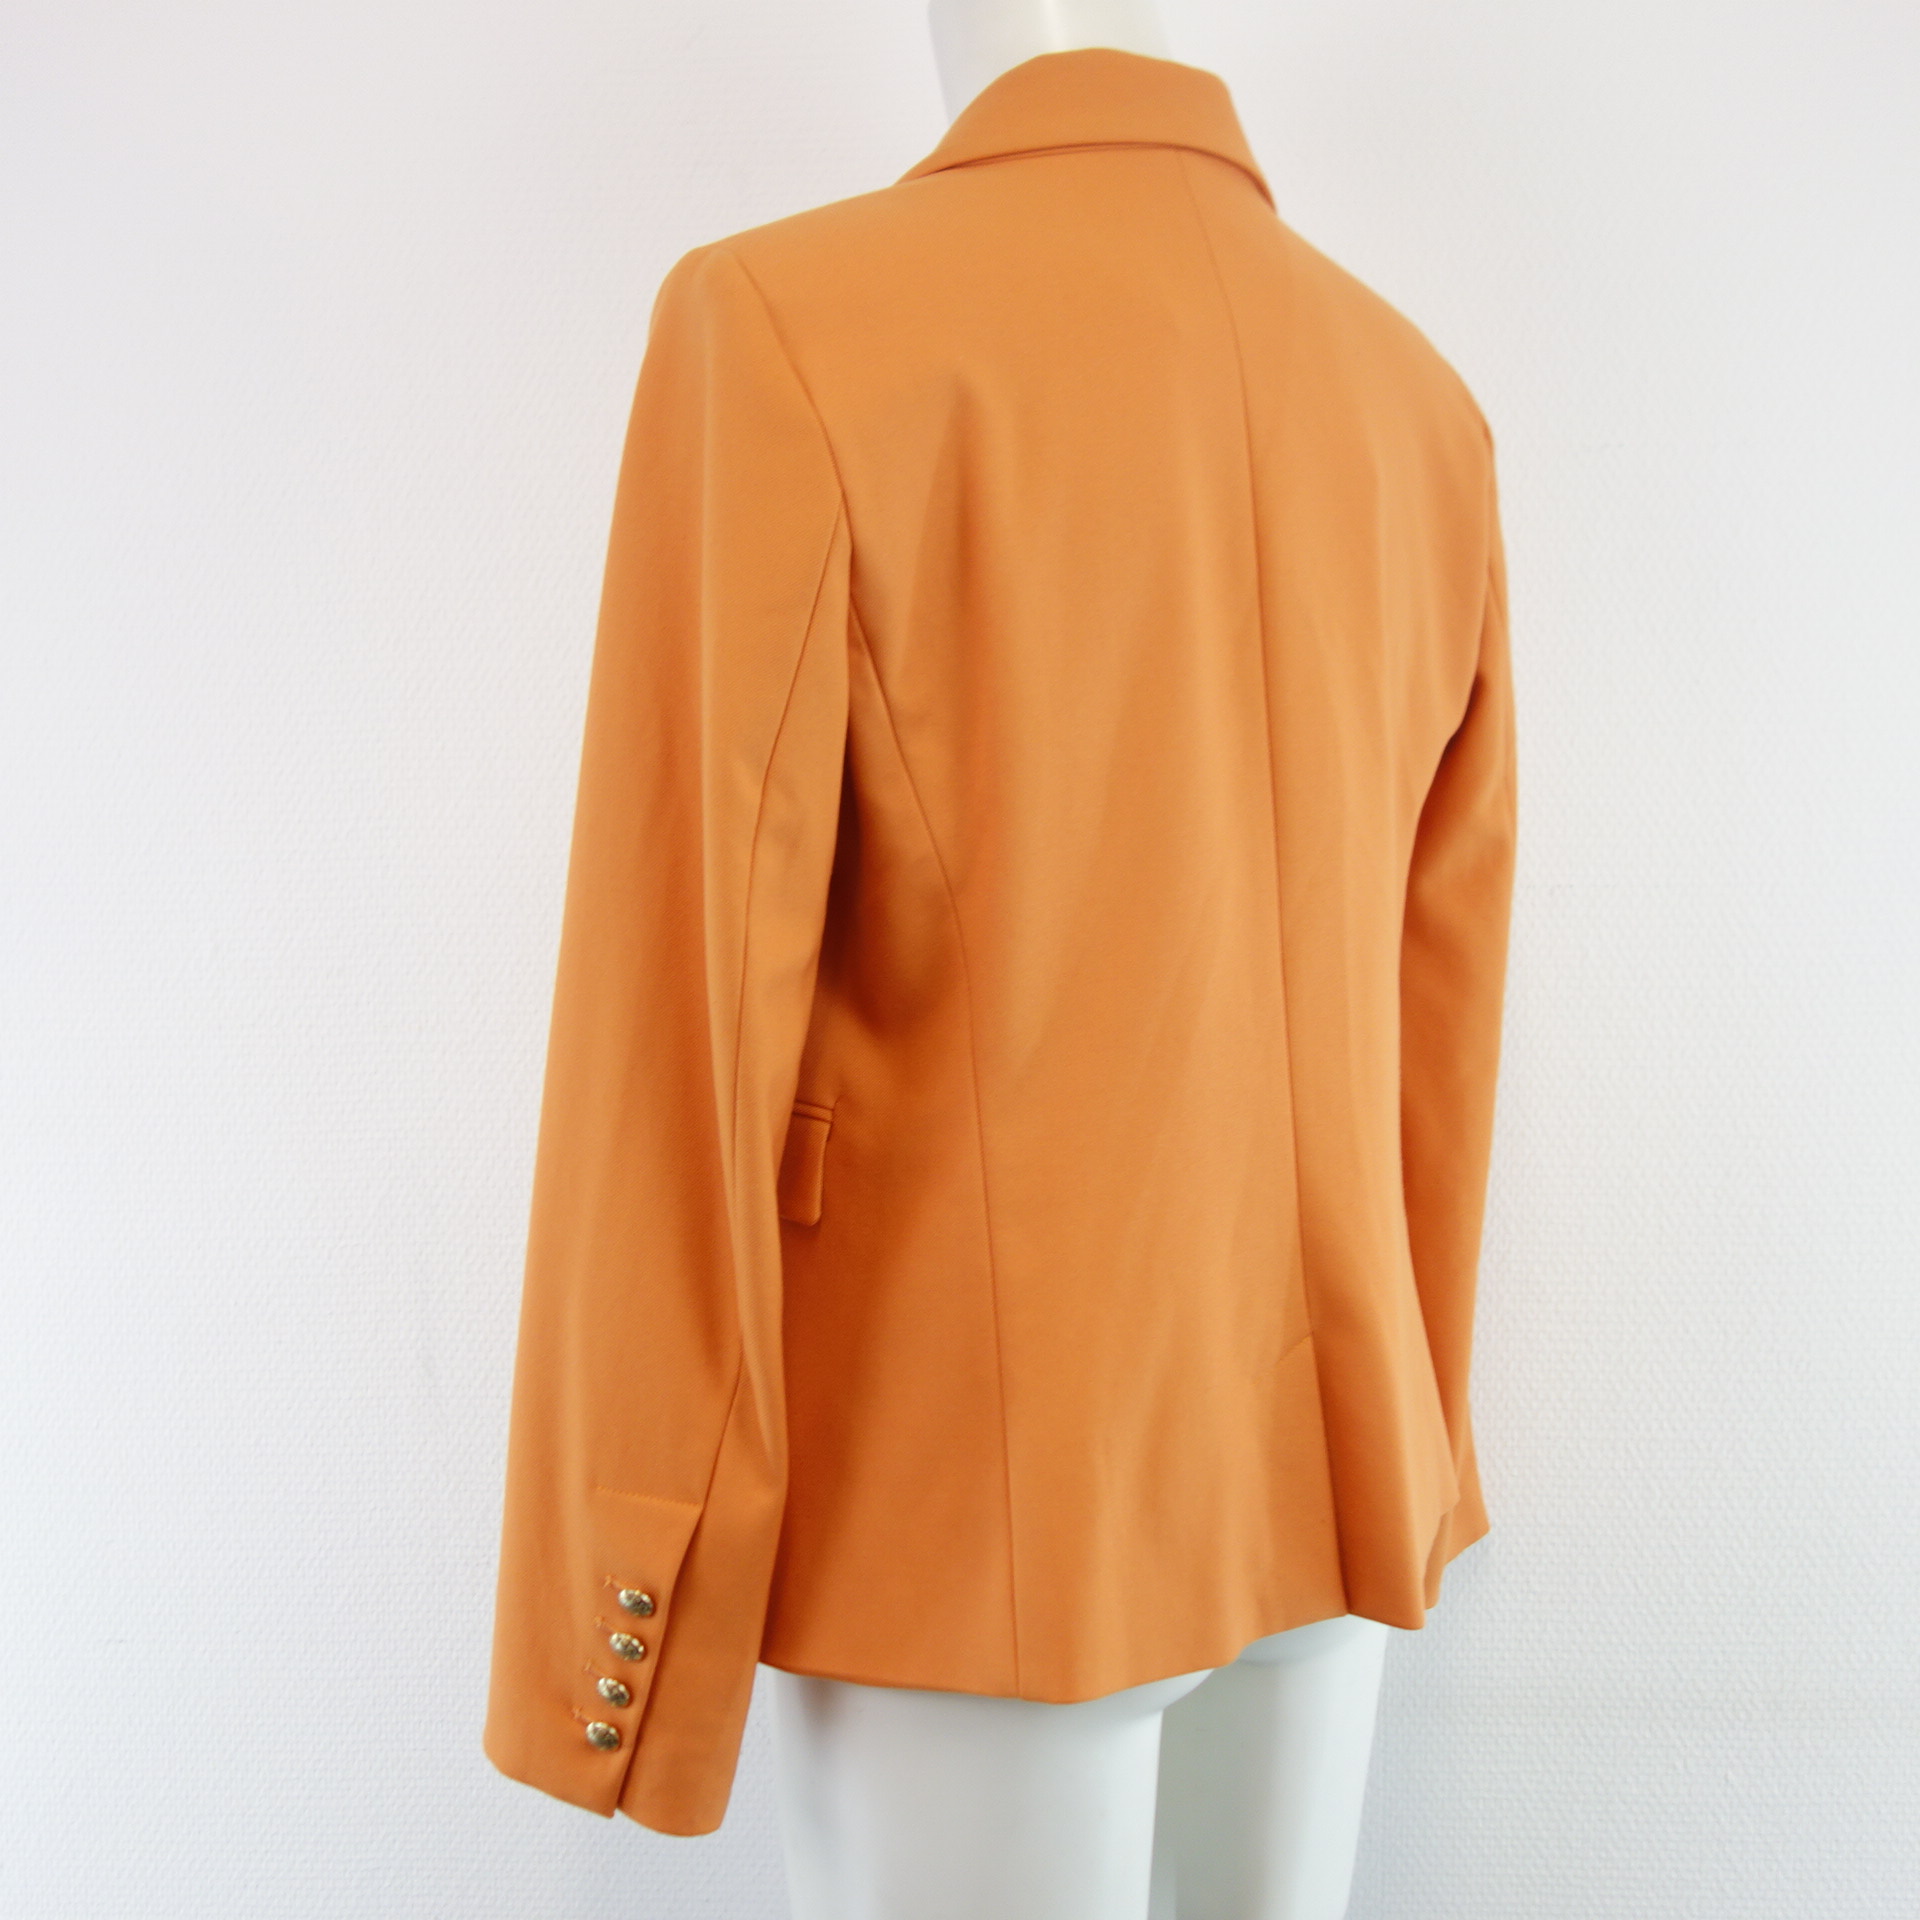 MOS MOSH Damen Blazer Jacke Orange Modell Beliz Twiggy Doppelreiher Slim